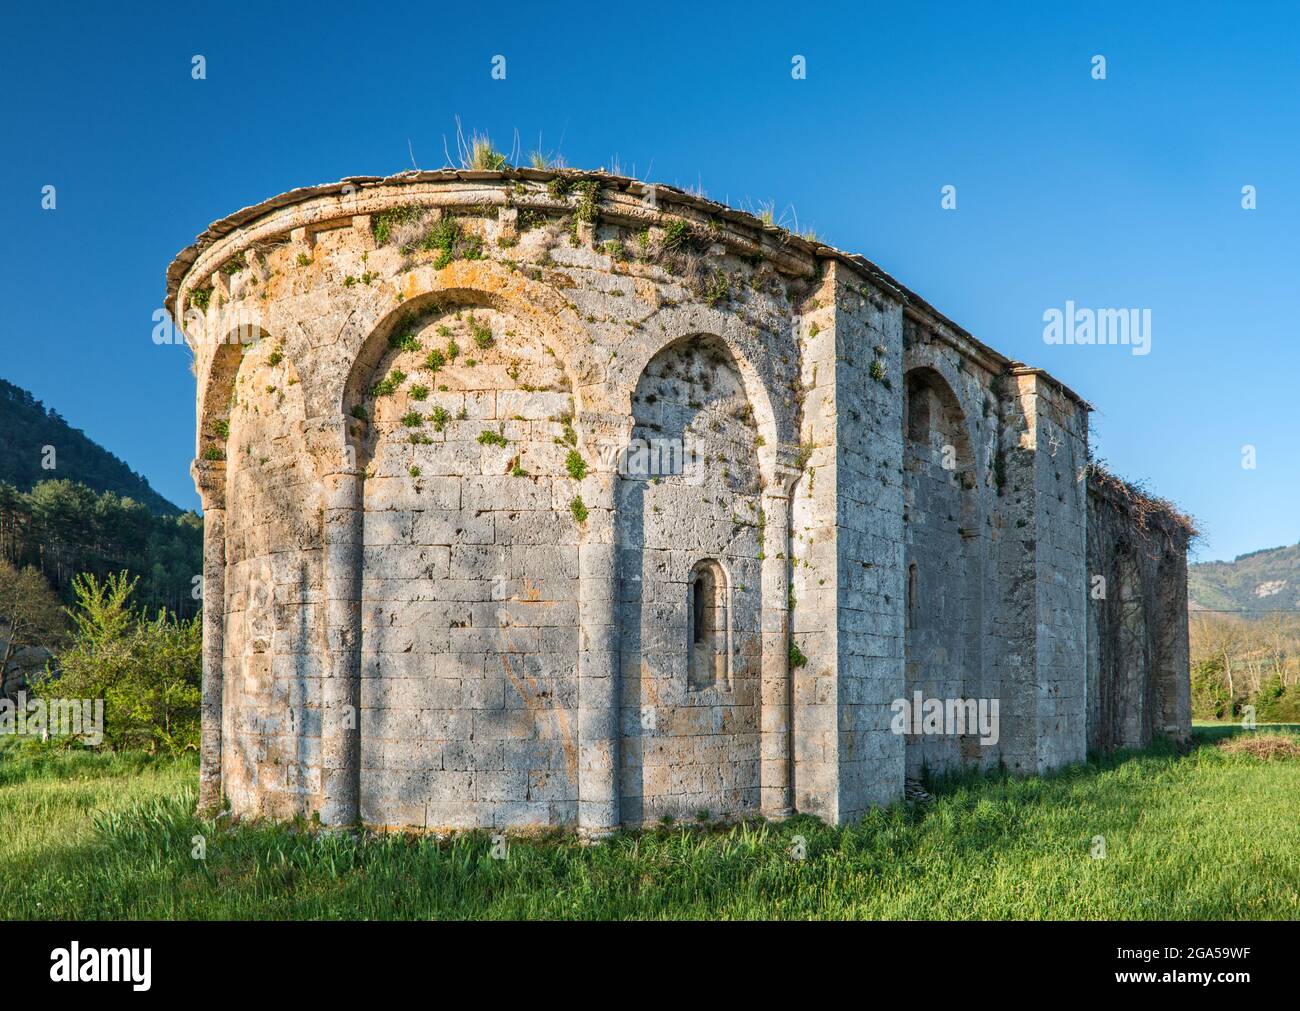 Église romane près de la ville de Nant, commune dans le département de l'Aveyron, Vallée de la Dourbie, région des Causses, Occitanie, France Banque D'Images